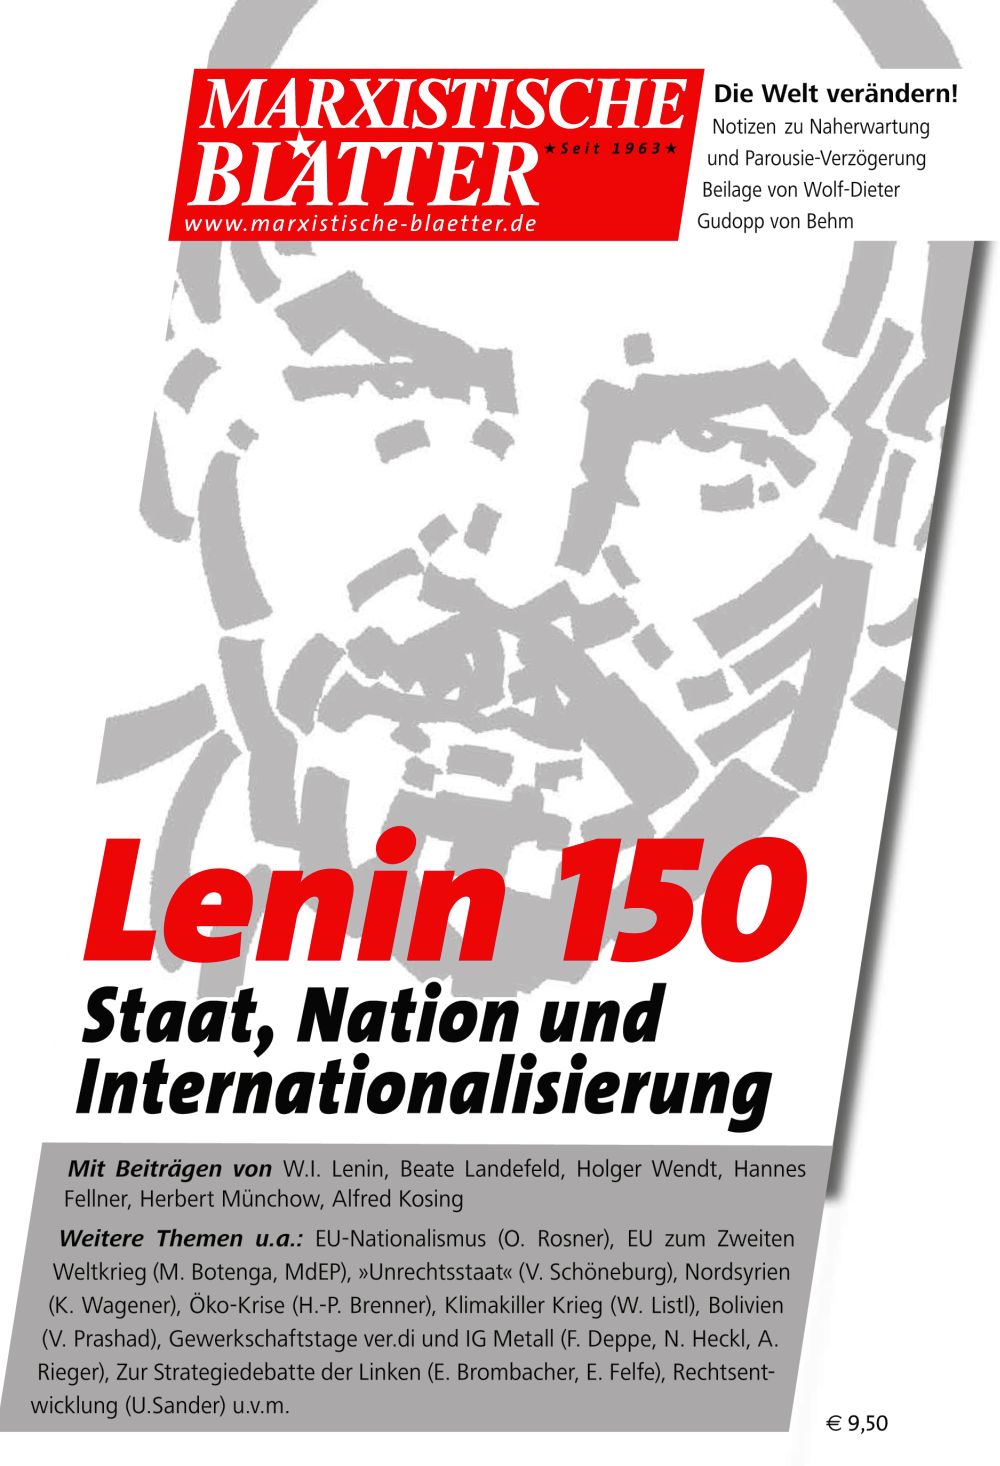 2020 - „Unser Lenin-Jahr 2020 ist eröffnet“ - - Theorie & Geschichte